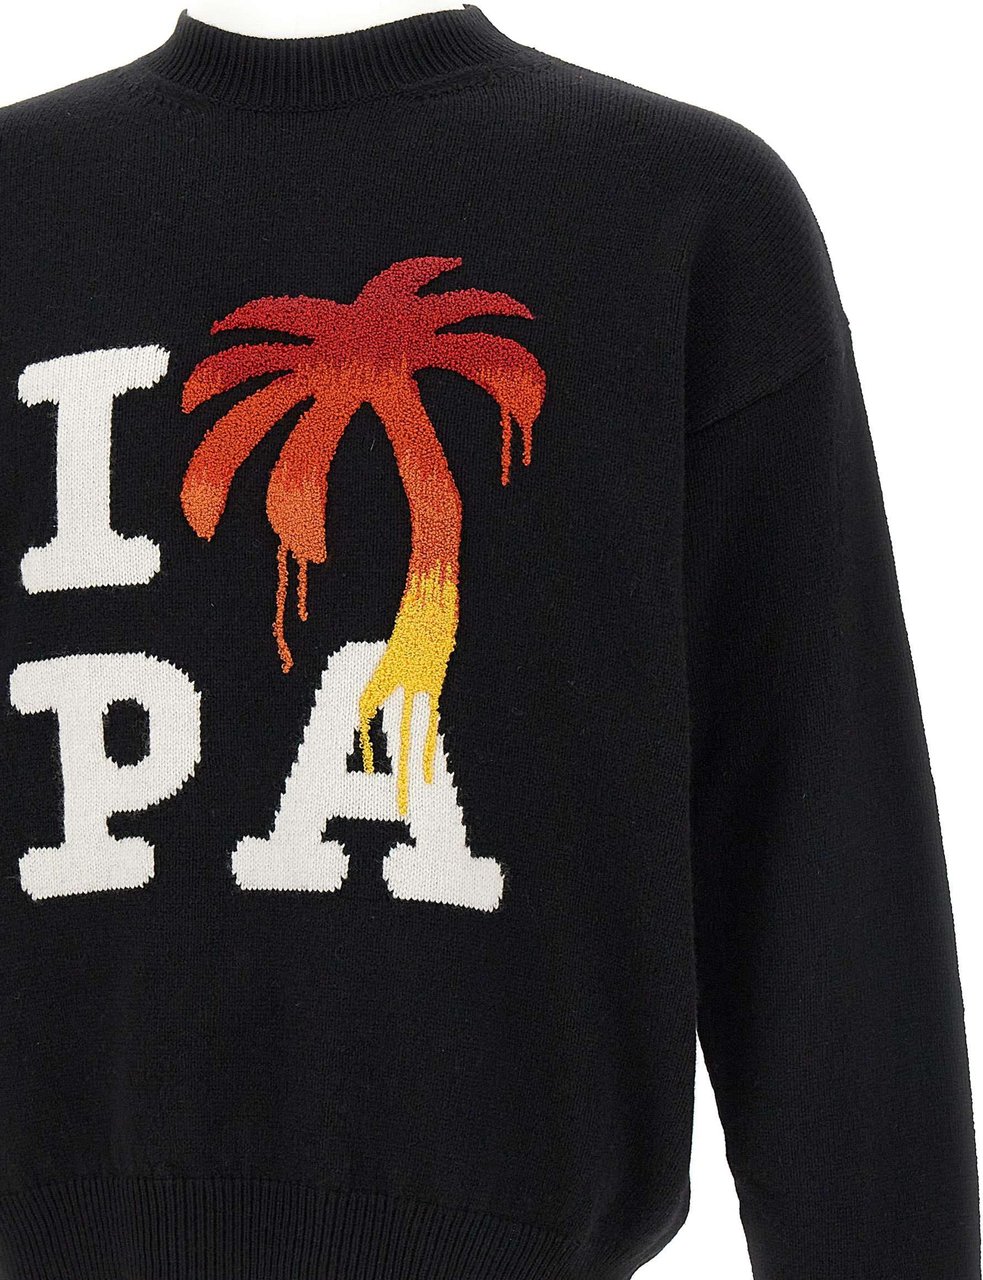 Palm Angels "I Love PA" sweater Zwart